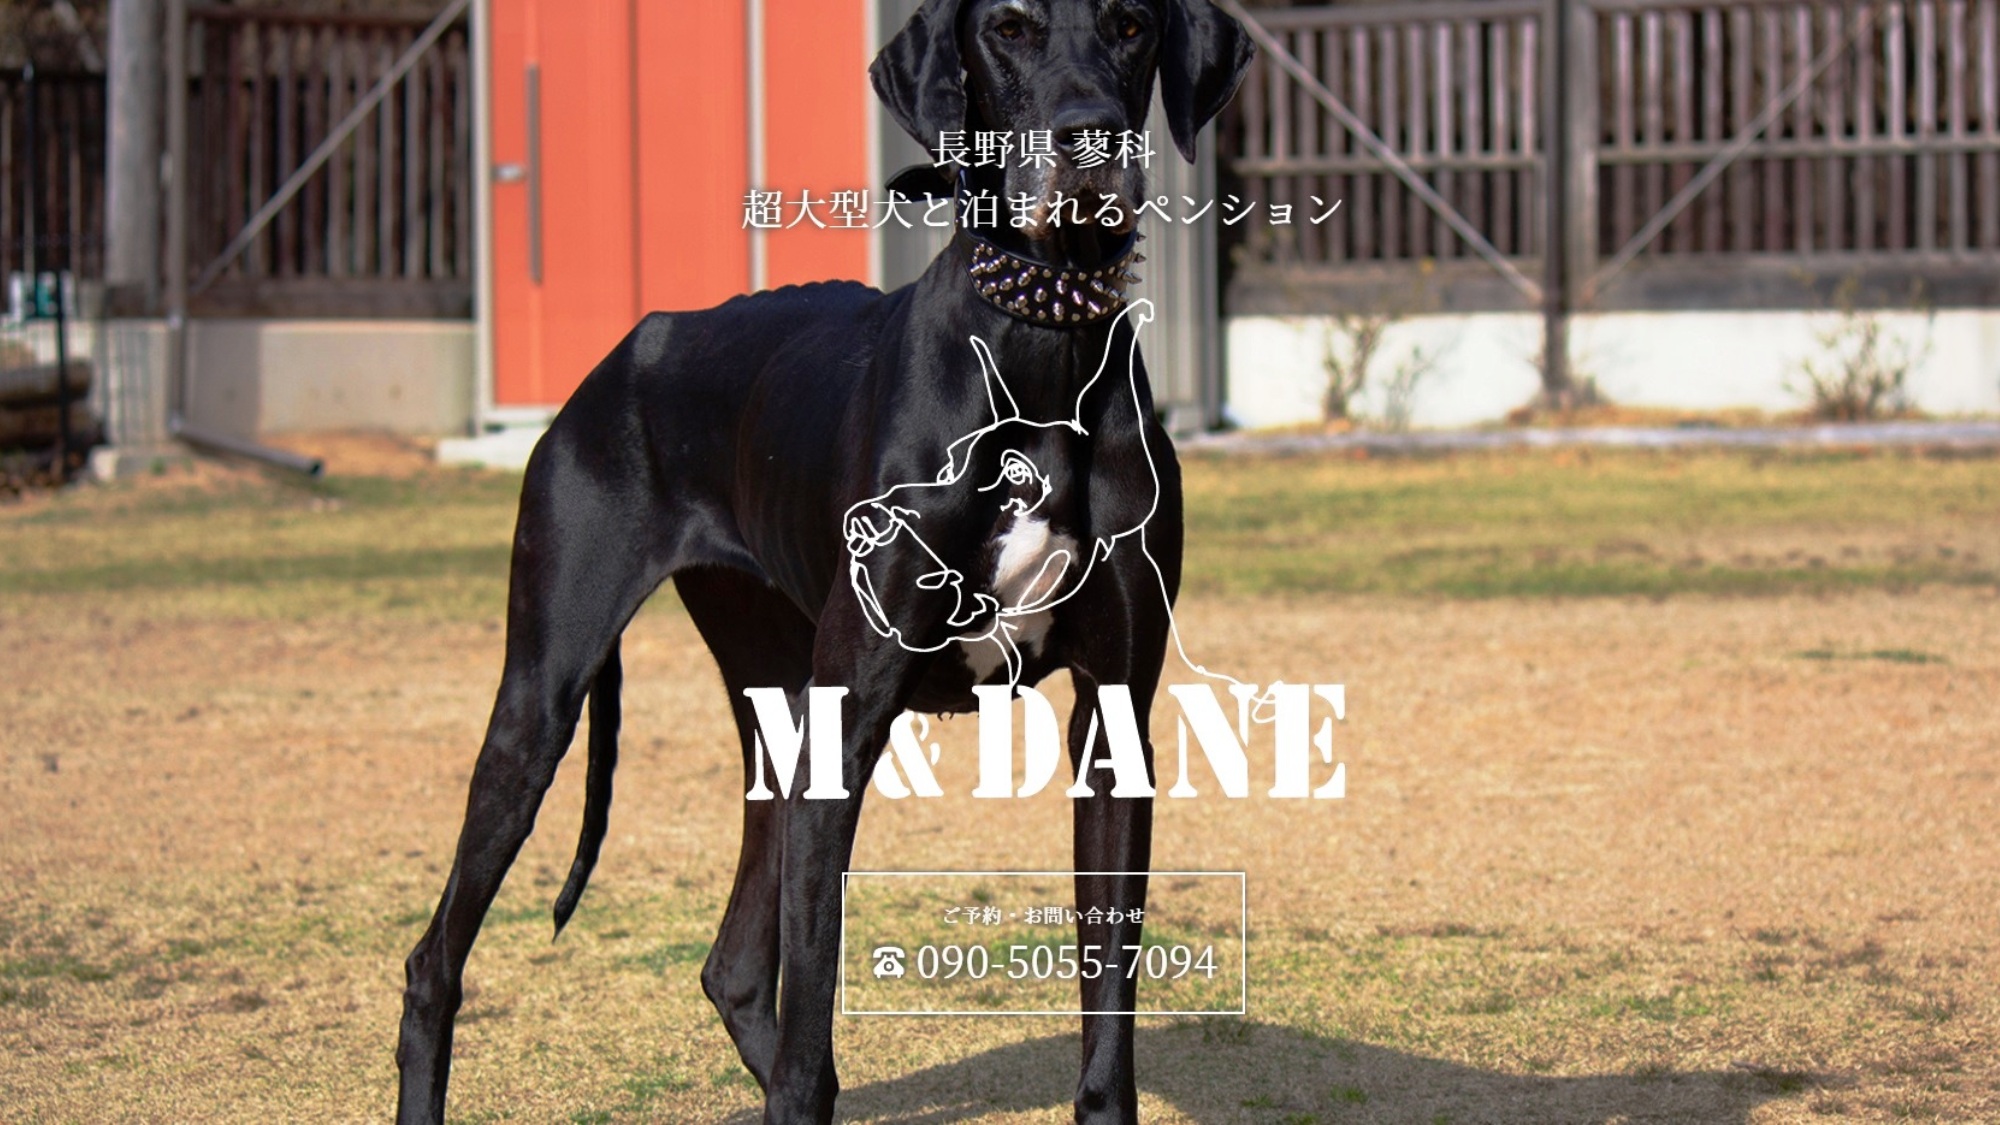 大型犬・超大型犬のためのペンション「M&DANE」愛犬との旅行をサポートします！